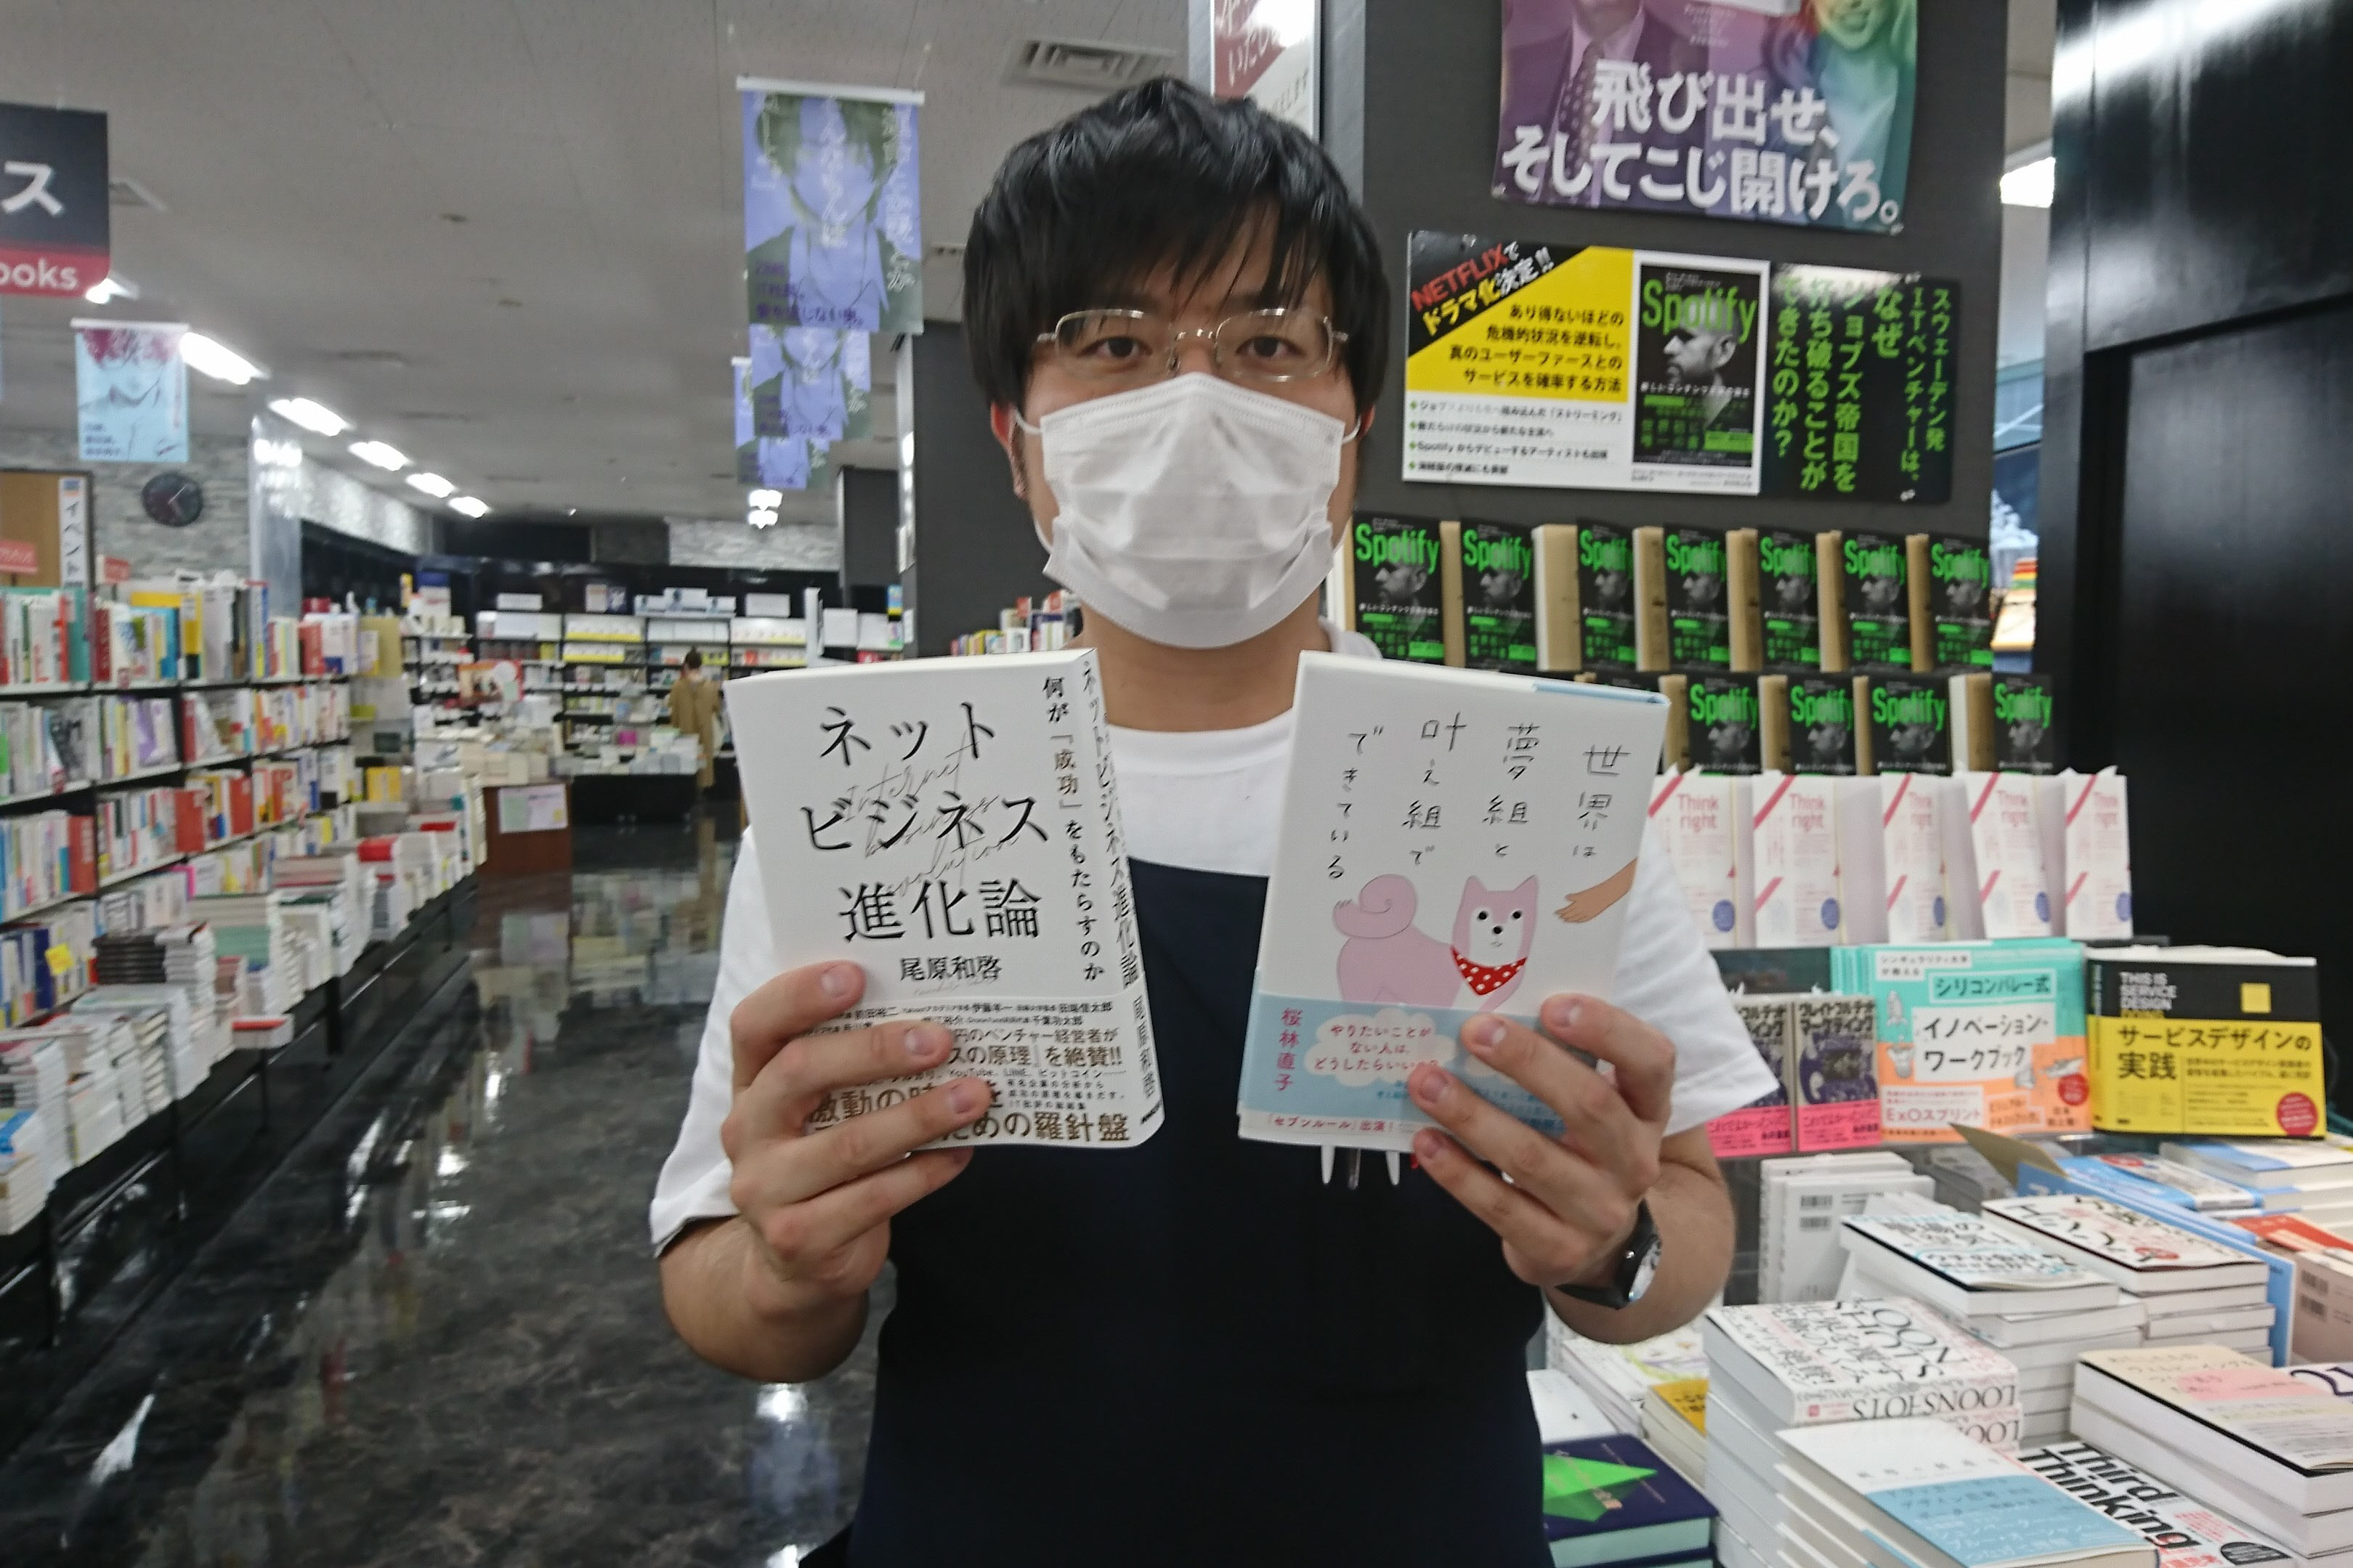 青山ブックセンター本店の本田翔也さんのおすすめは『ネットビジネス進化論』と『世界は夢組と叶え組でできている』